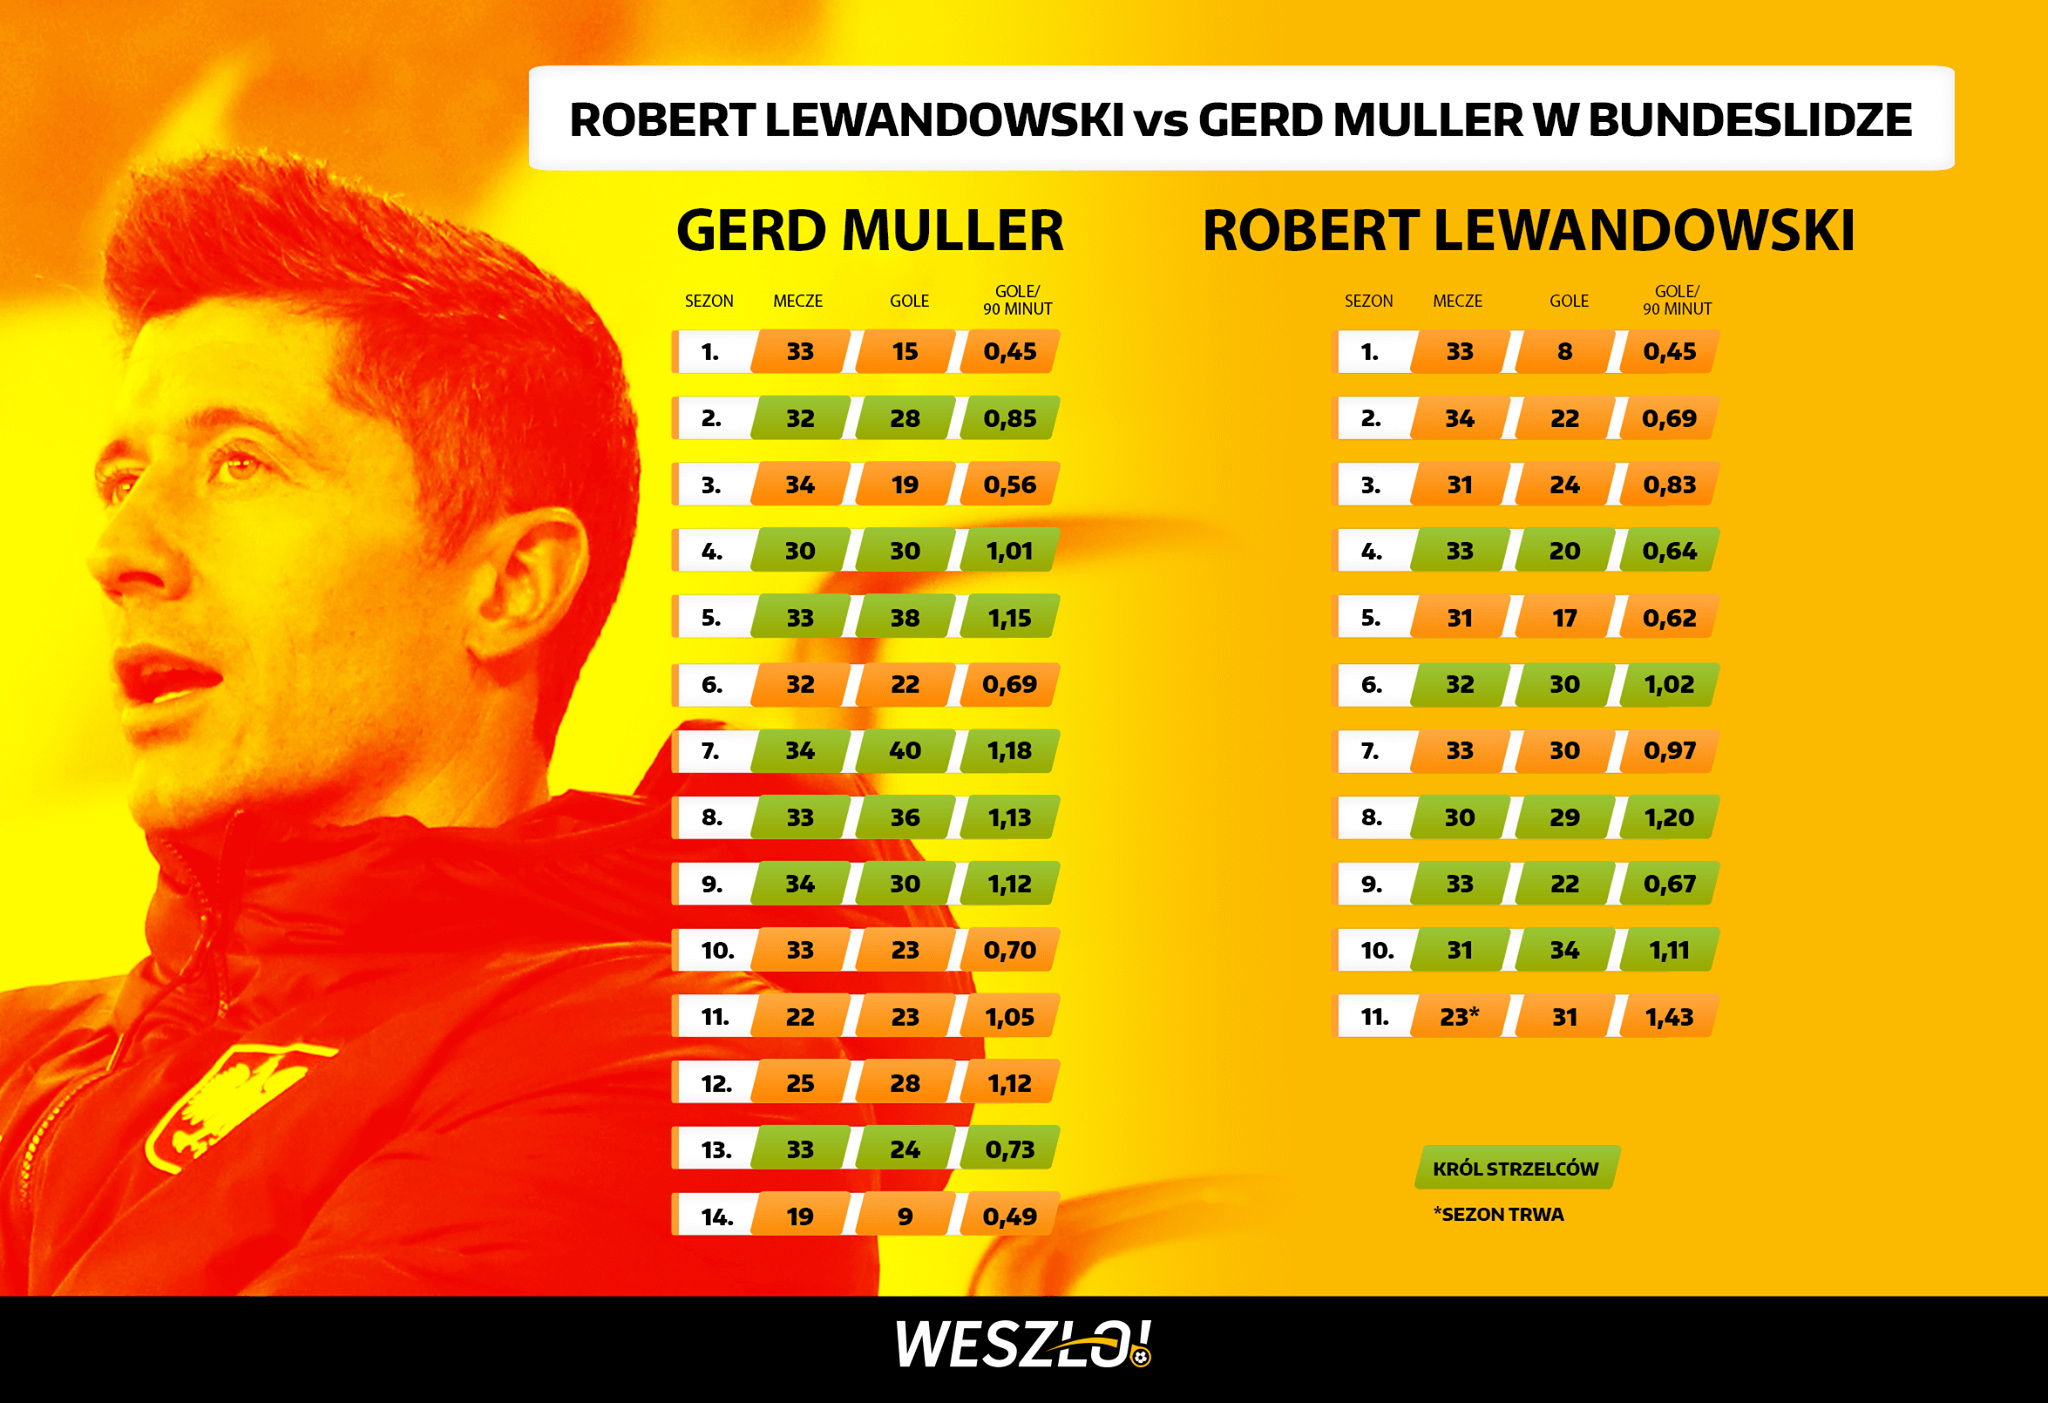 Robert Lewandowski vs Gerd Muller, Bundesliga